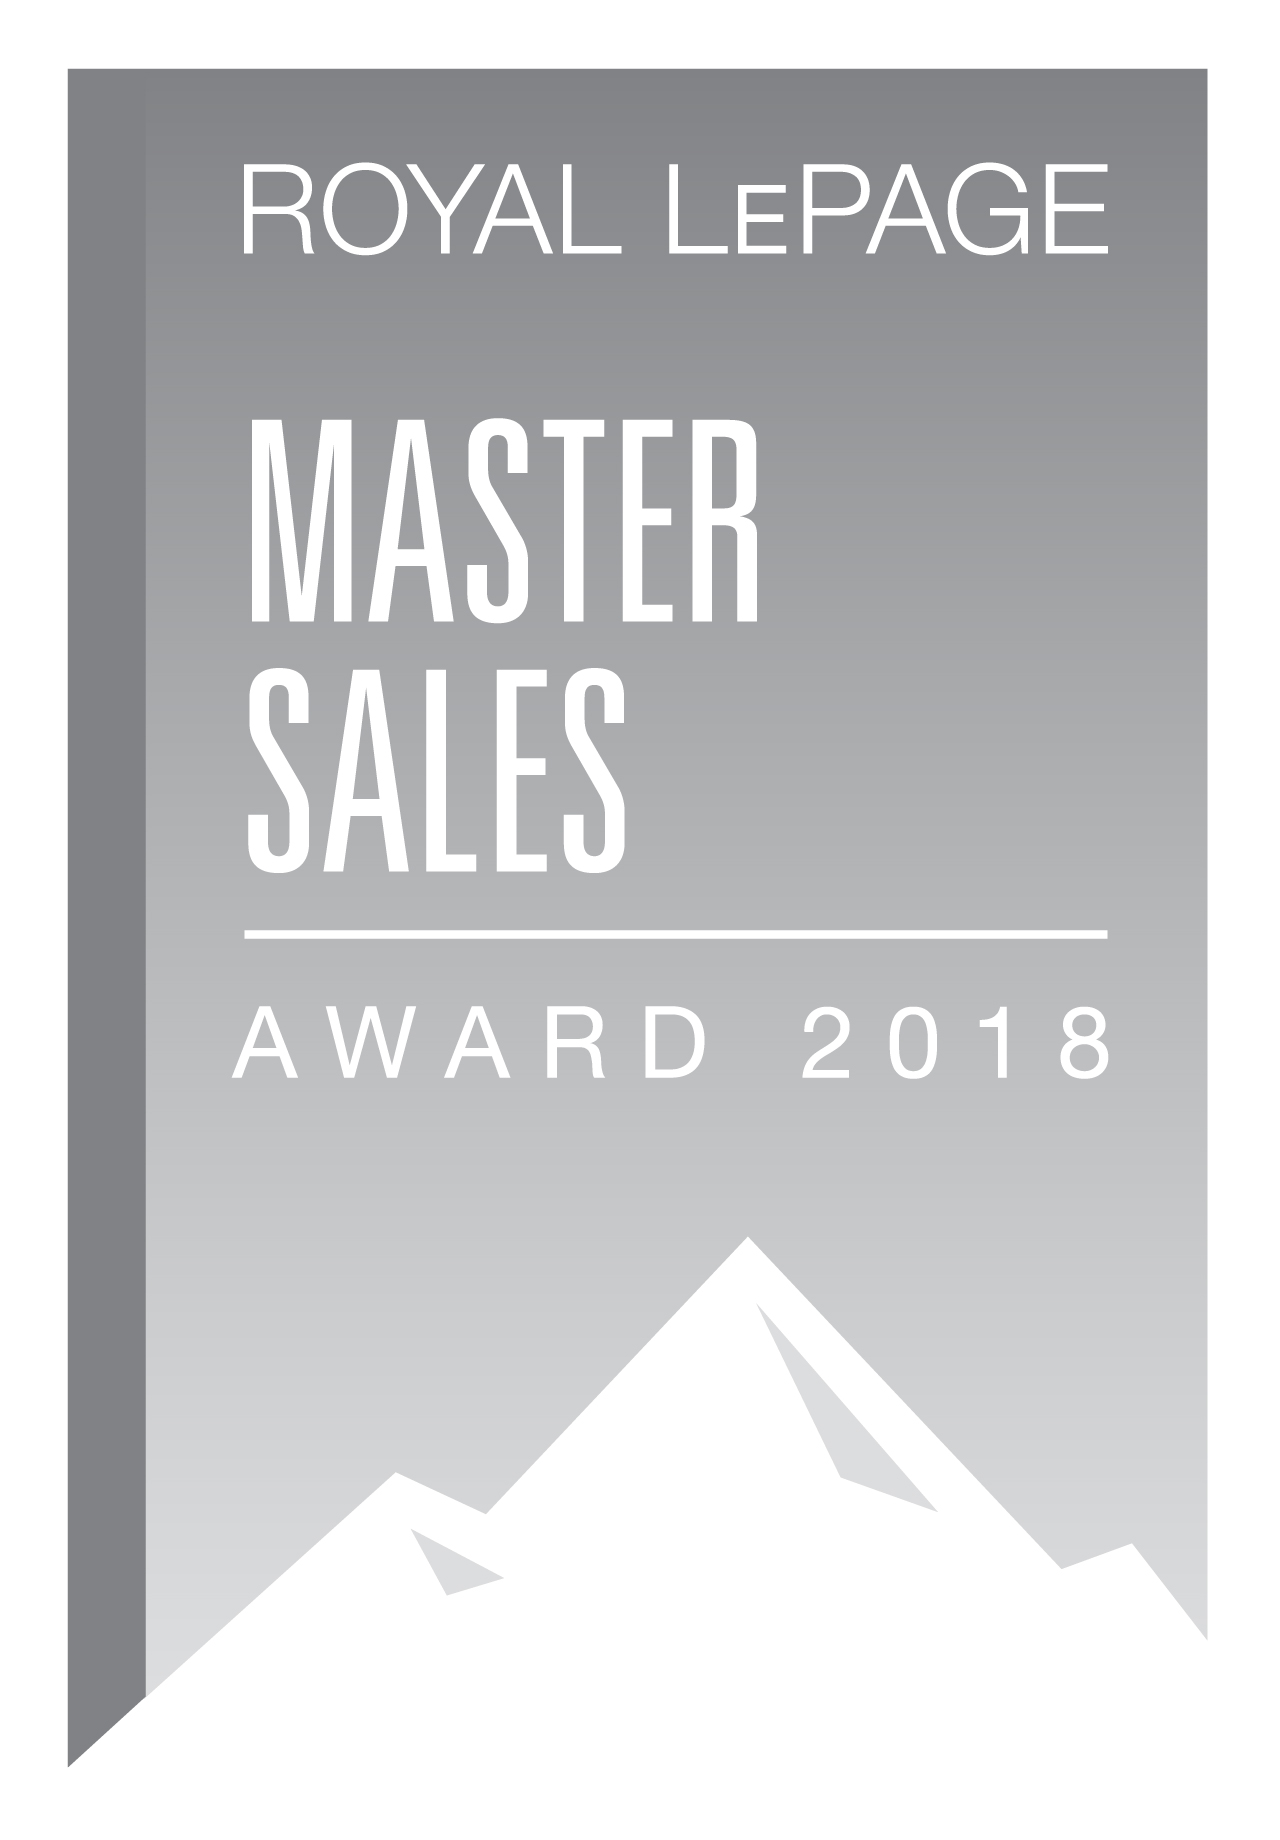 Master Sales Award 2018